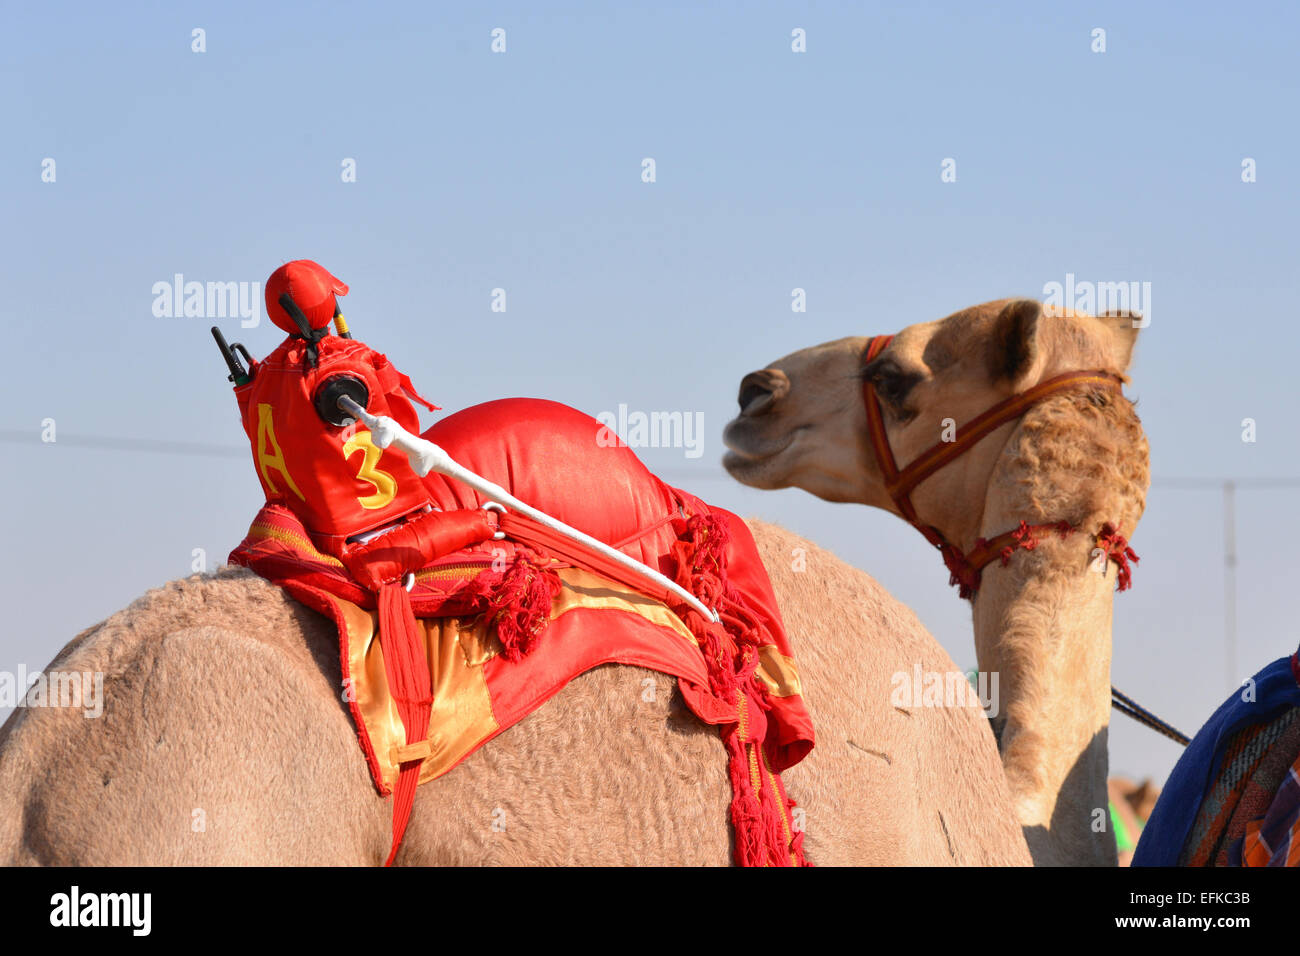 Jockey Robot racing sur un chameau avant une course Banque D'Images